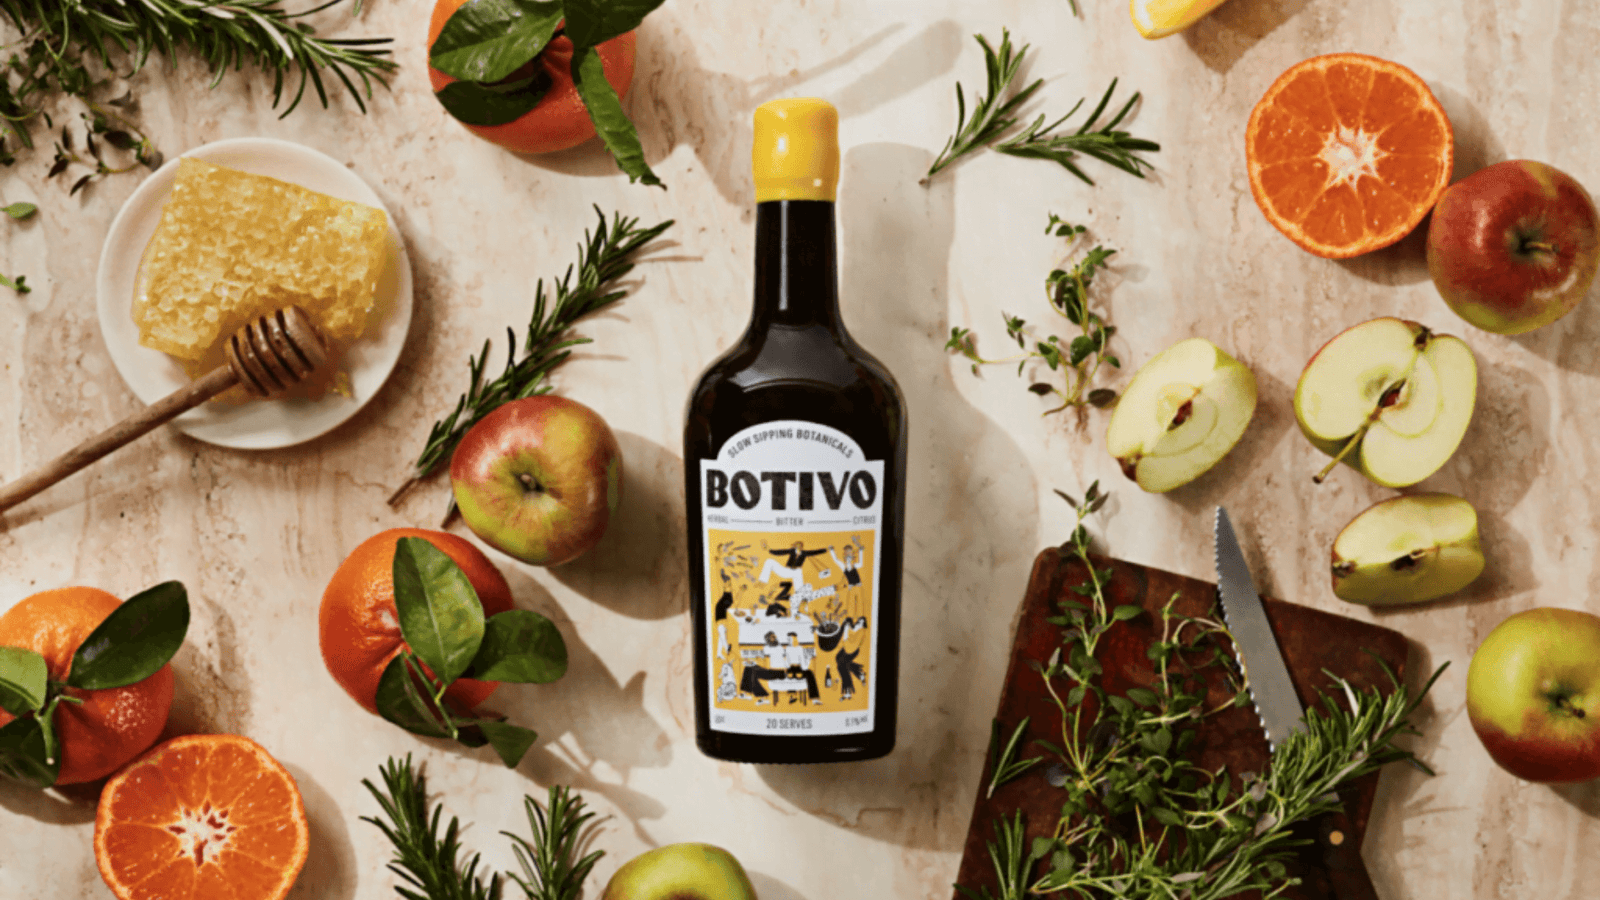 Fles Botivo, alcoholvrije spirit. Op tafel naast appels, honing, sinaasappels en rozemarijn.